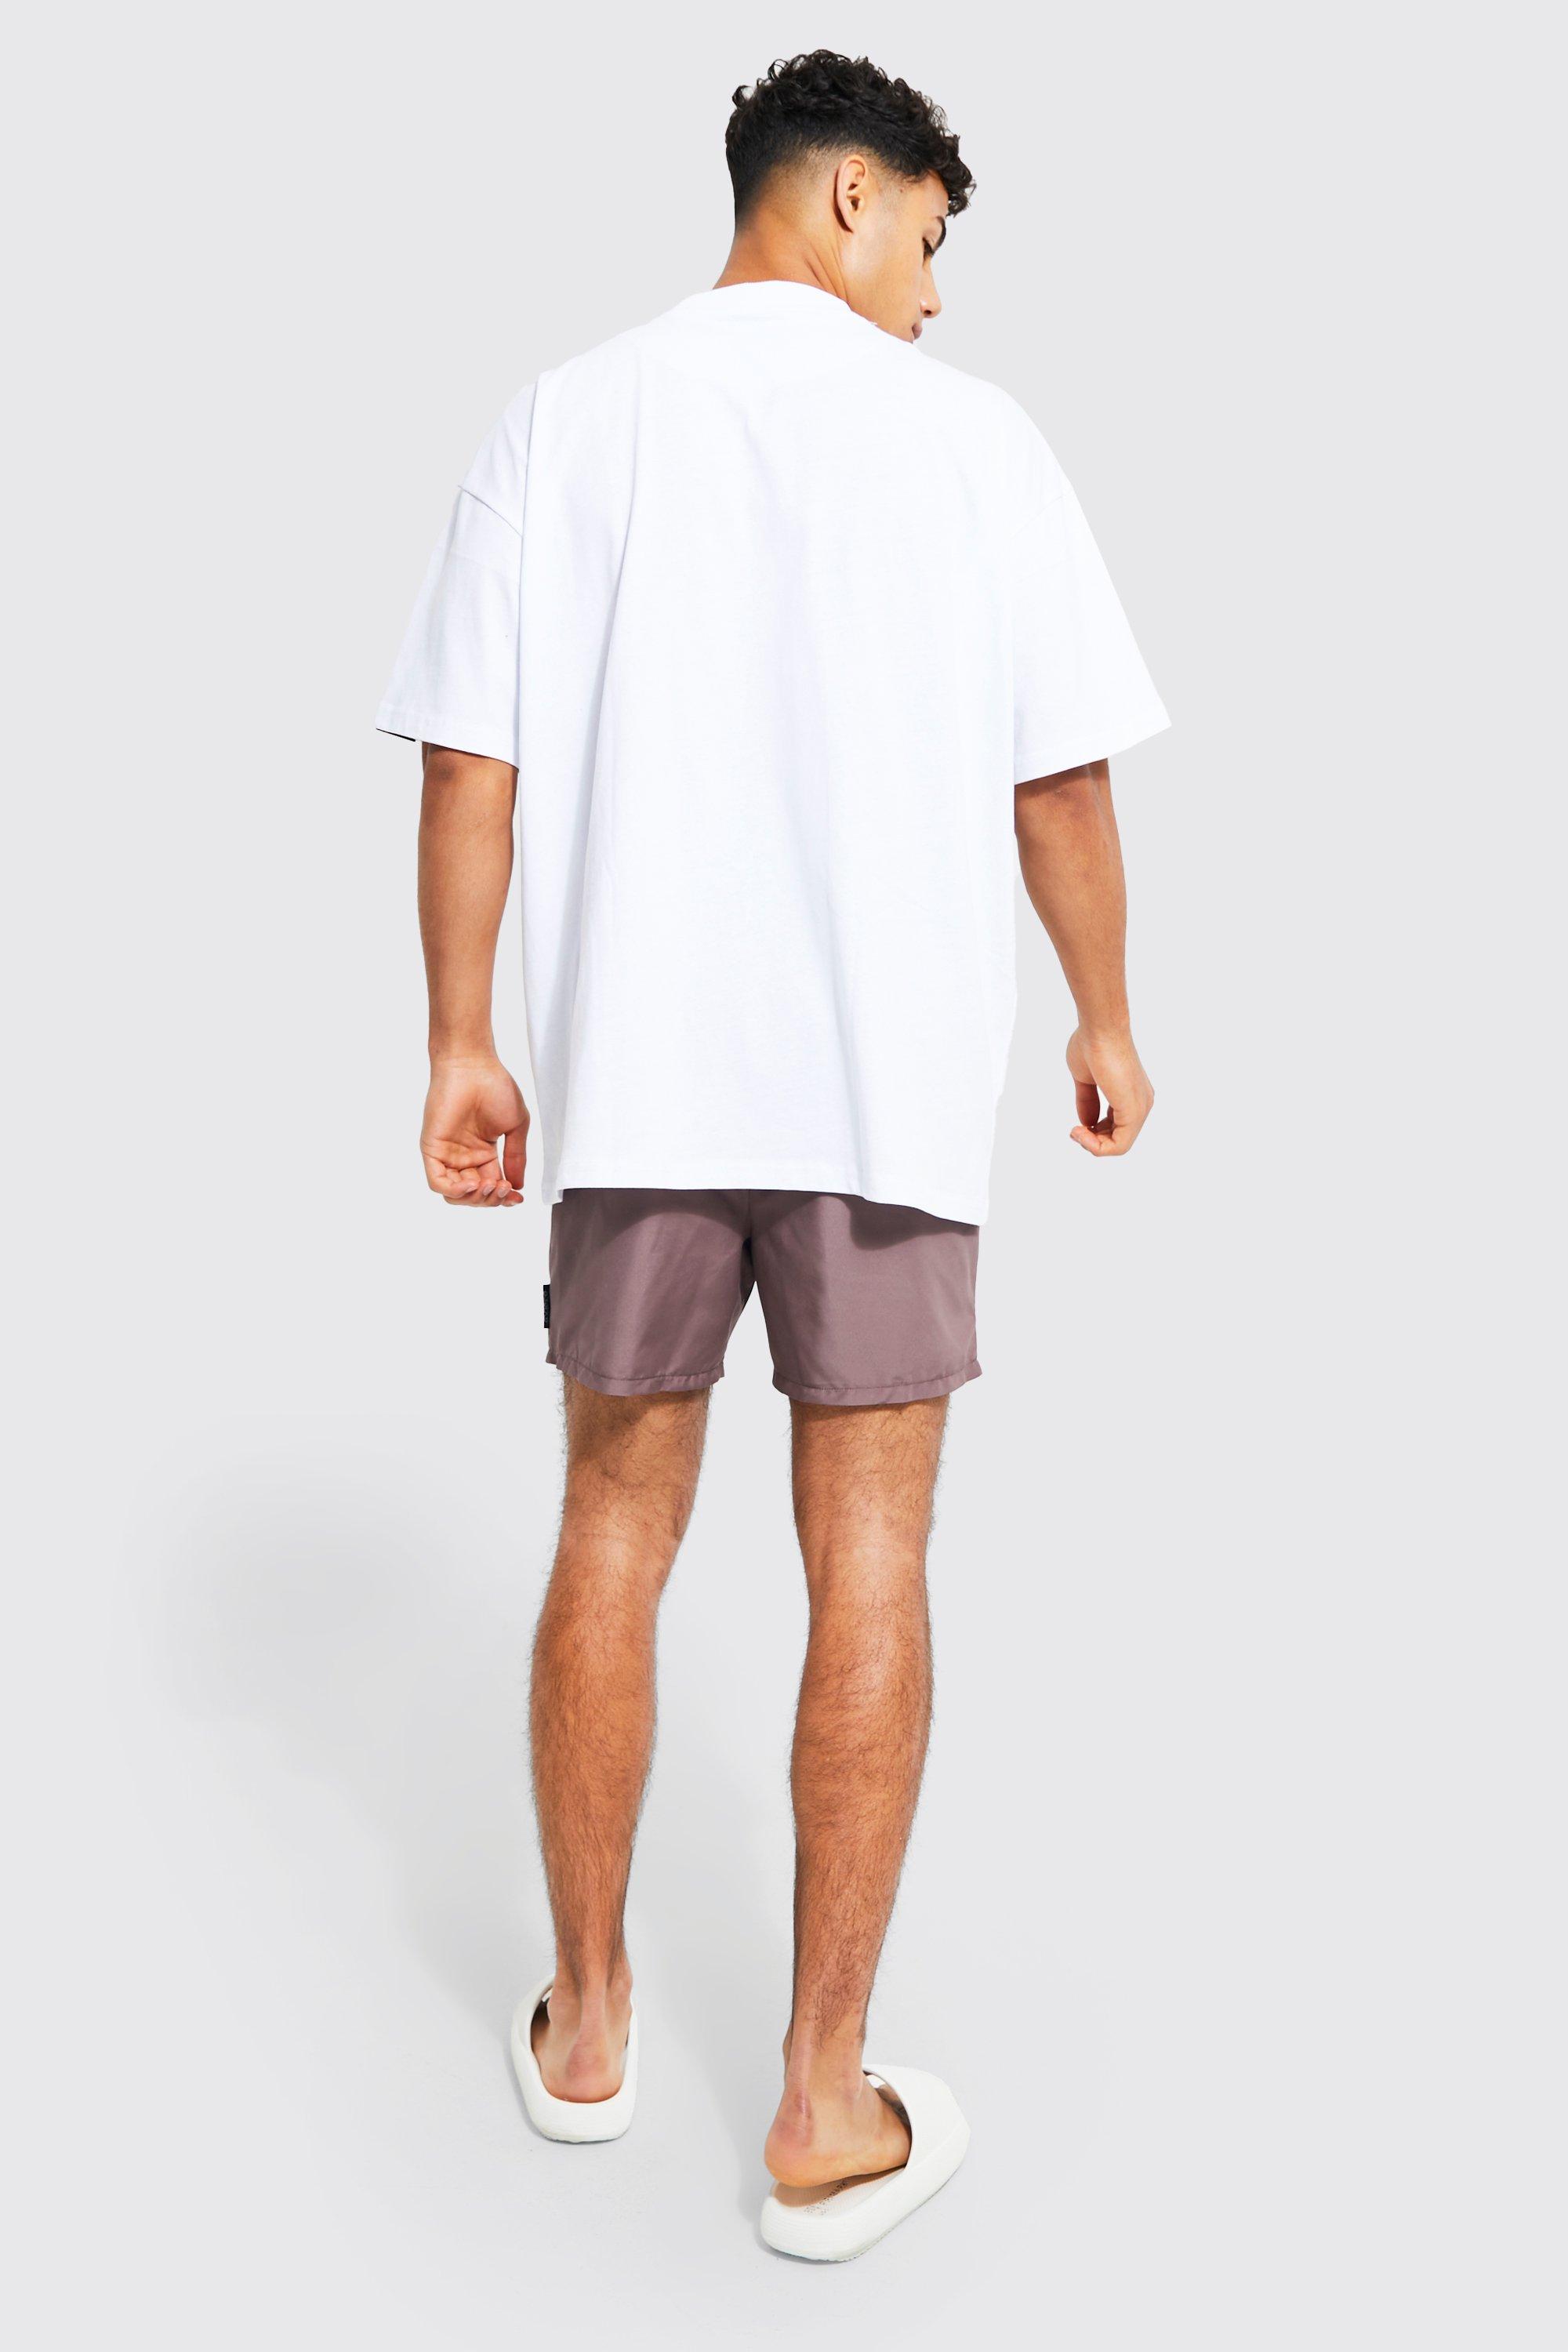 These with an oversized T-shirt..👌🏻#shorts #boyshorts